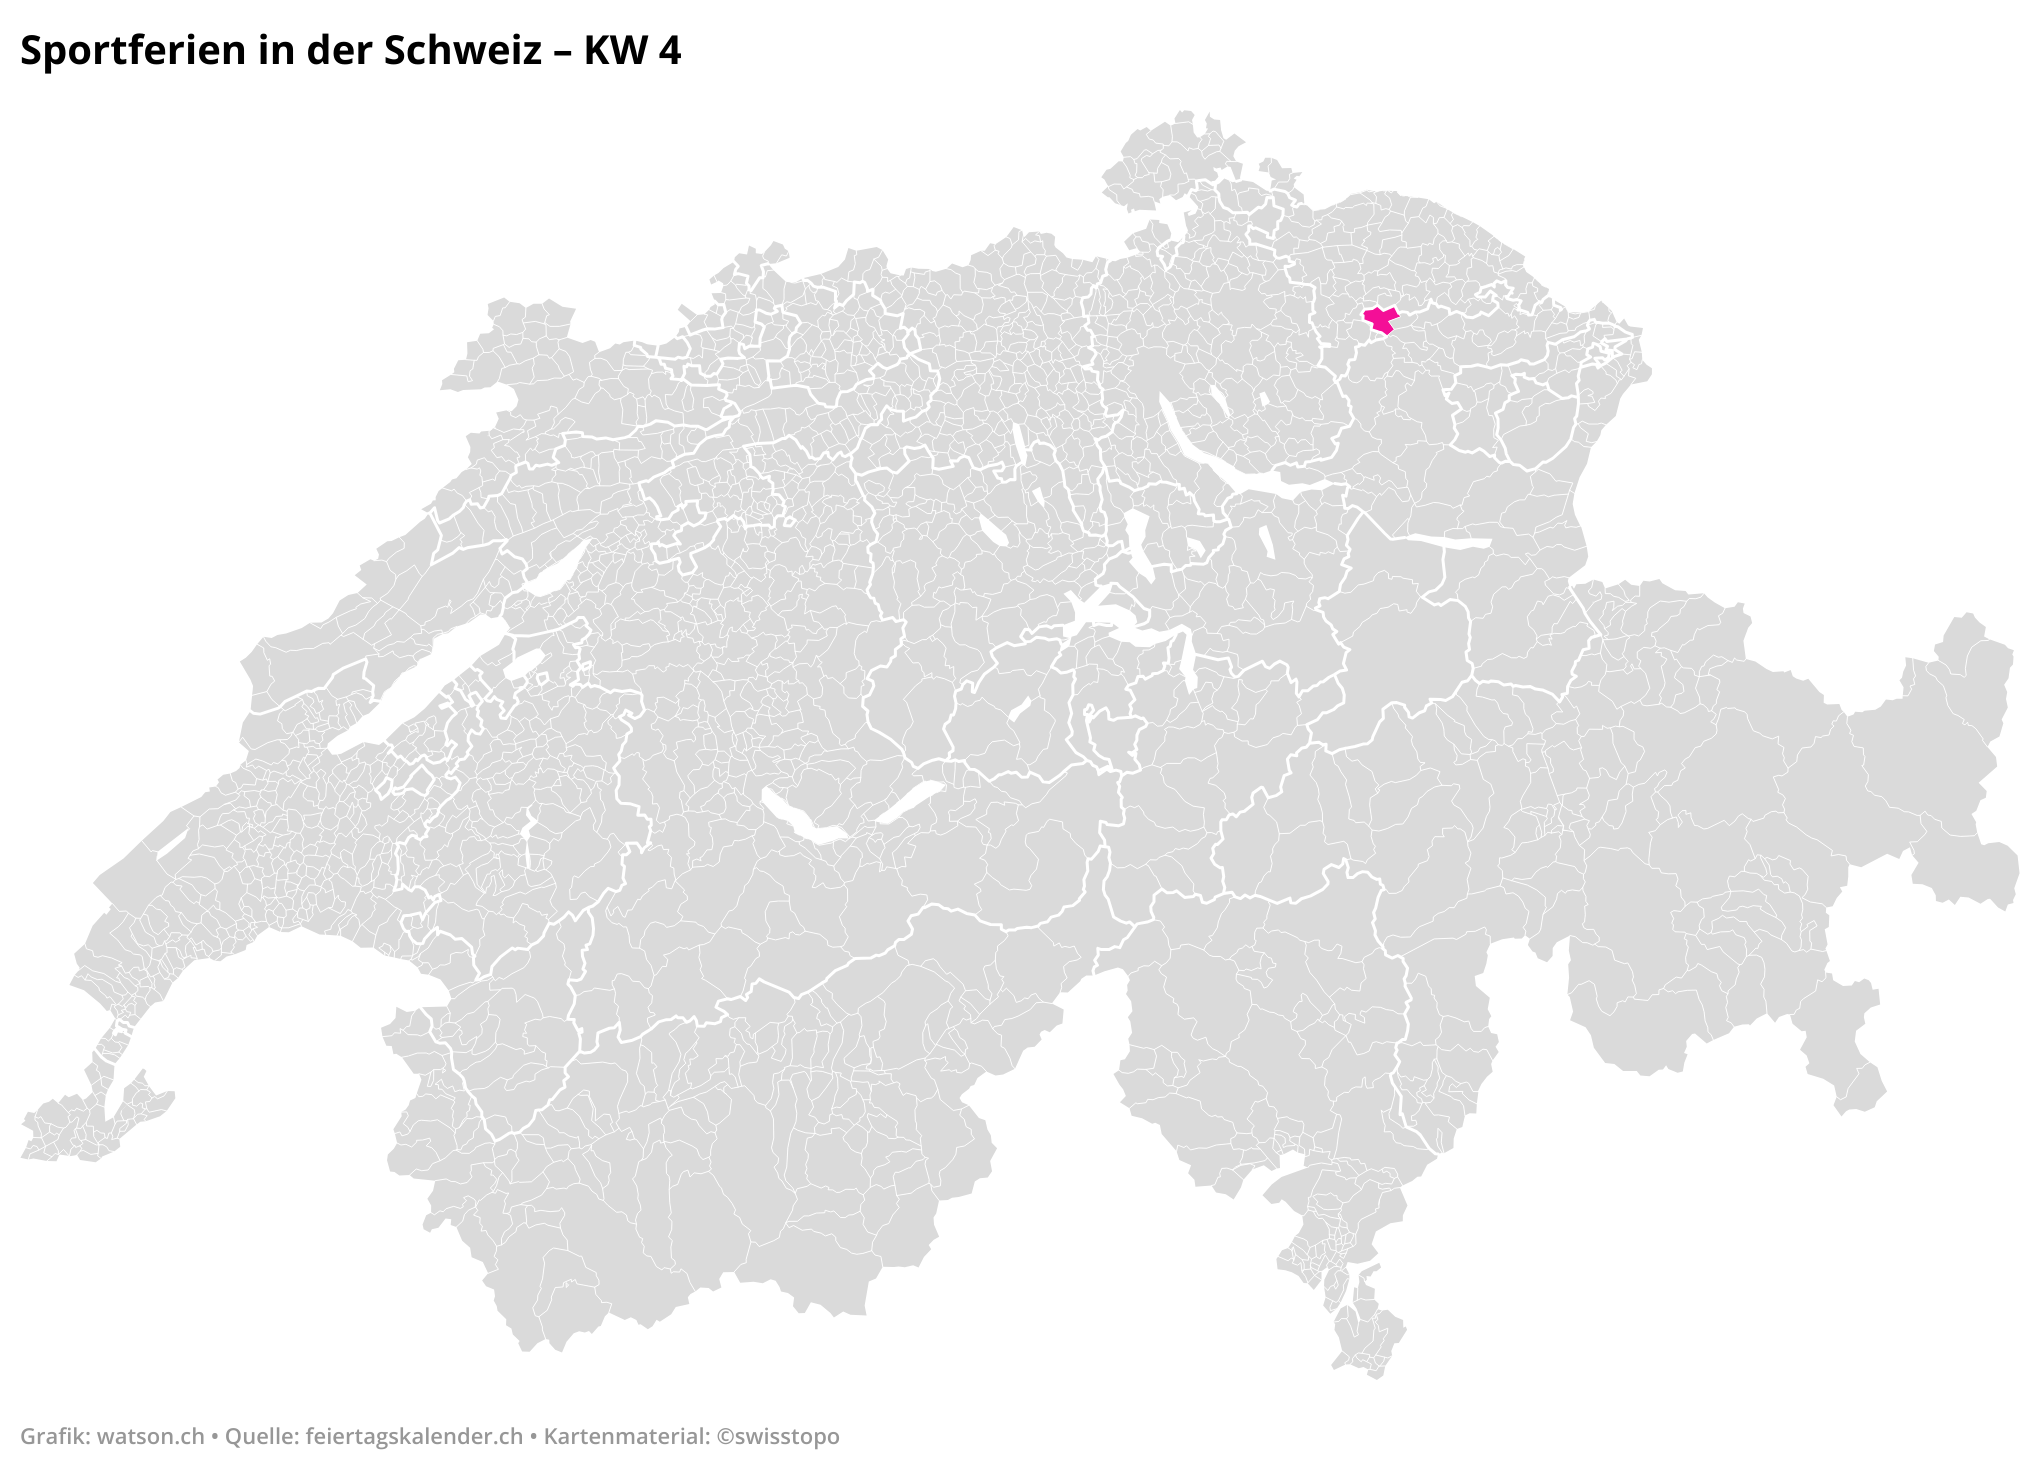 Sportferien in der Schweiz - KW 4